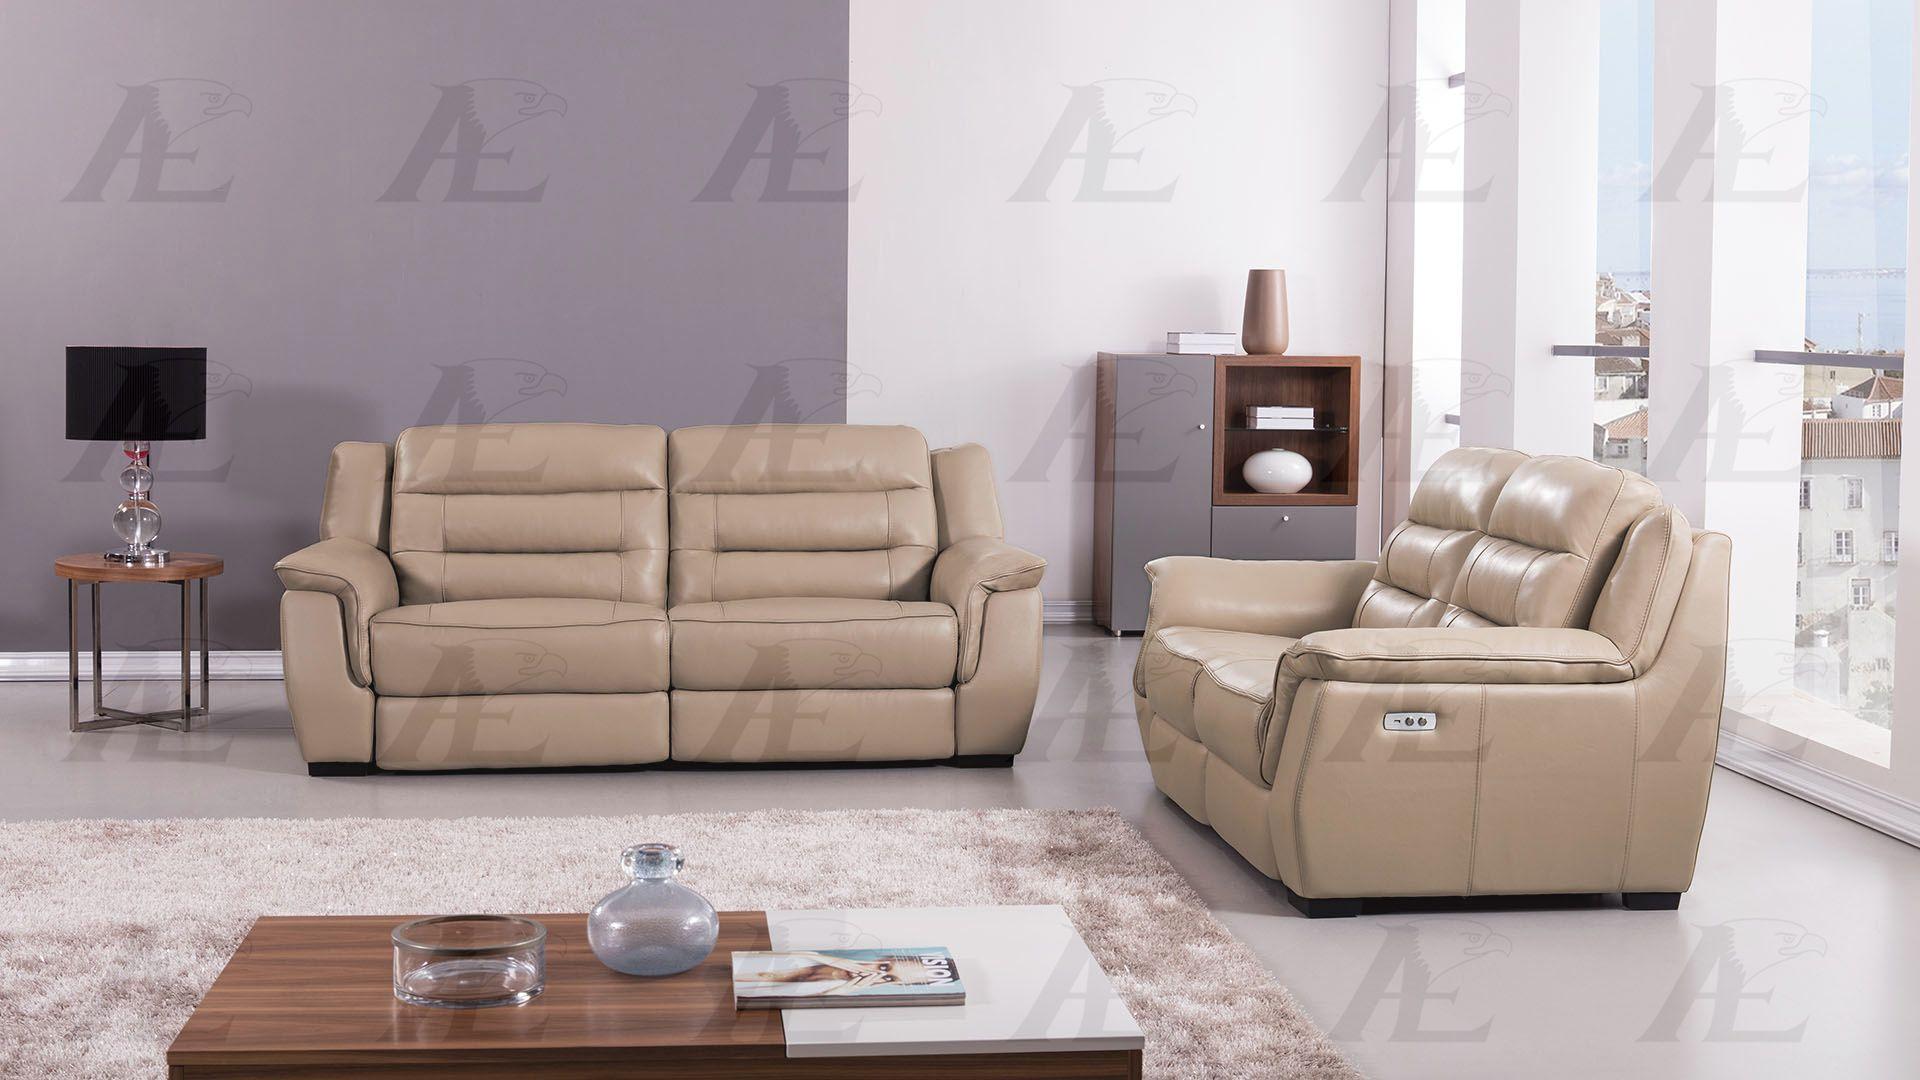 

    
EK089-TAN-LS American Eagle Furniture Recliner Loveseat
